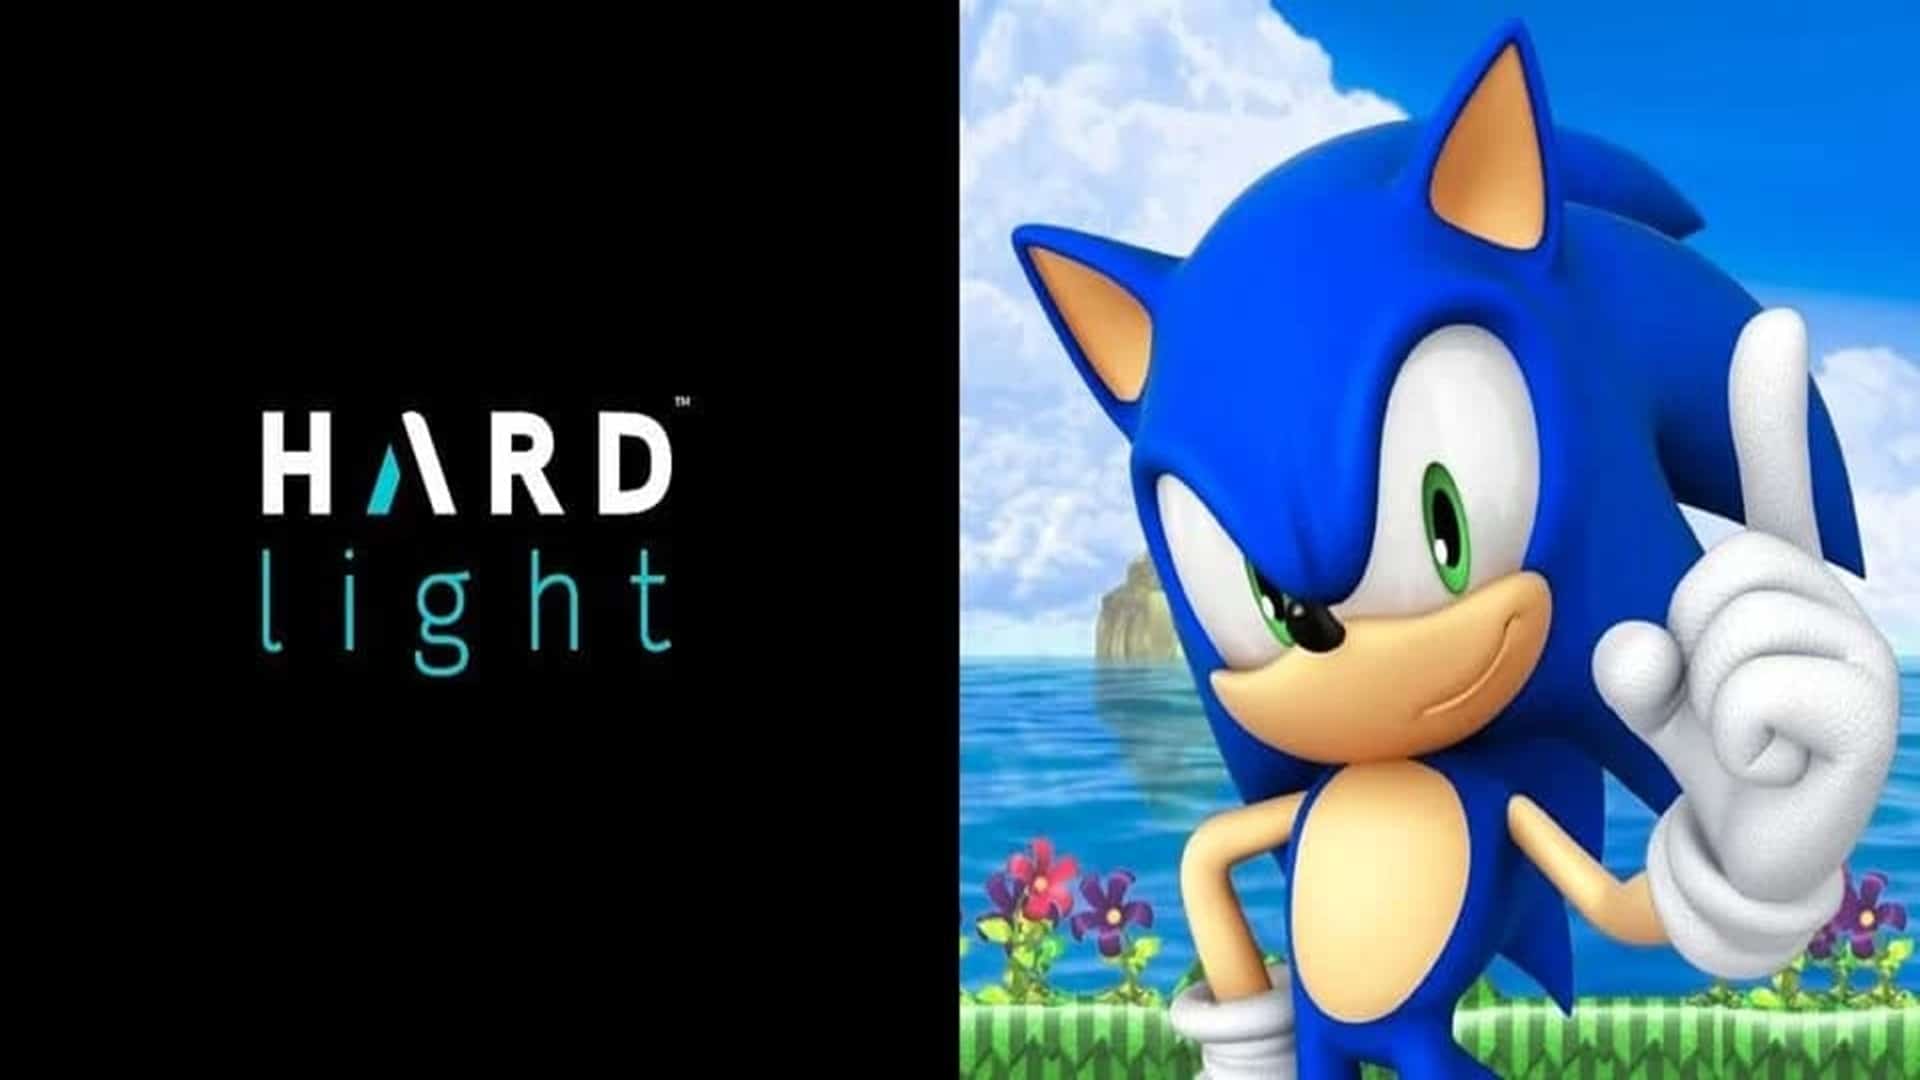 Hardlight Studio de Sega está trabajando en un nuevo juego de plataforma, GamersRD